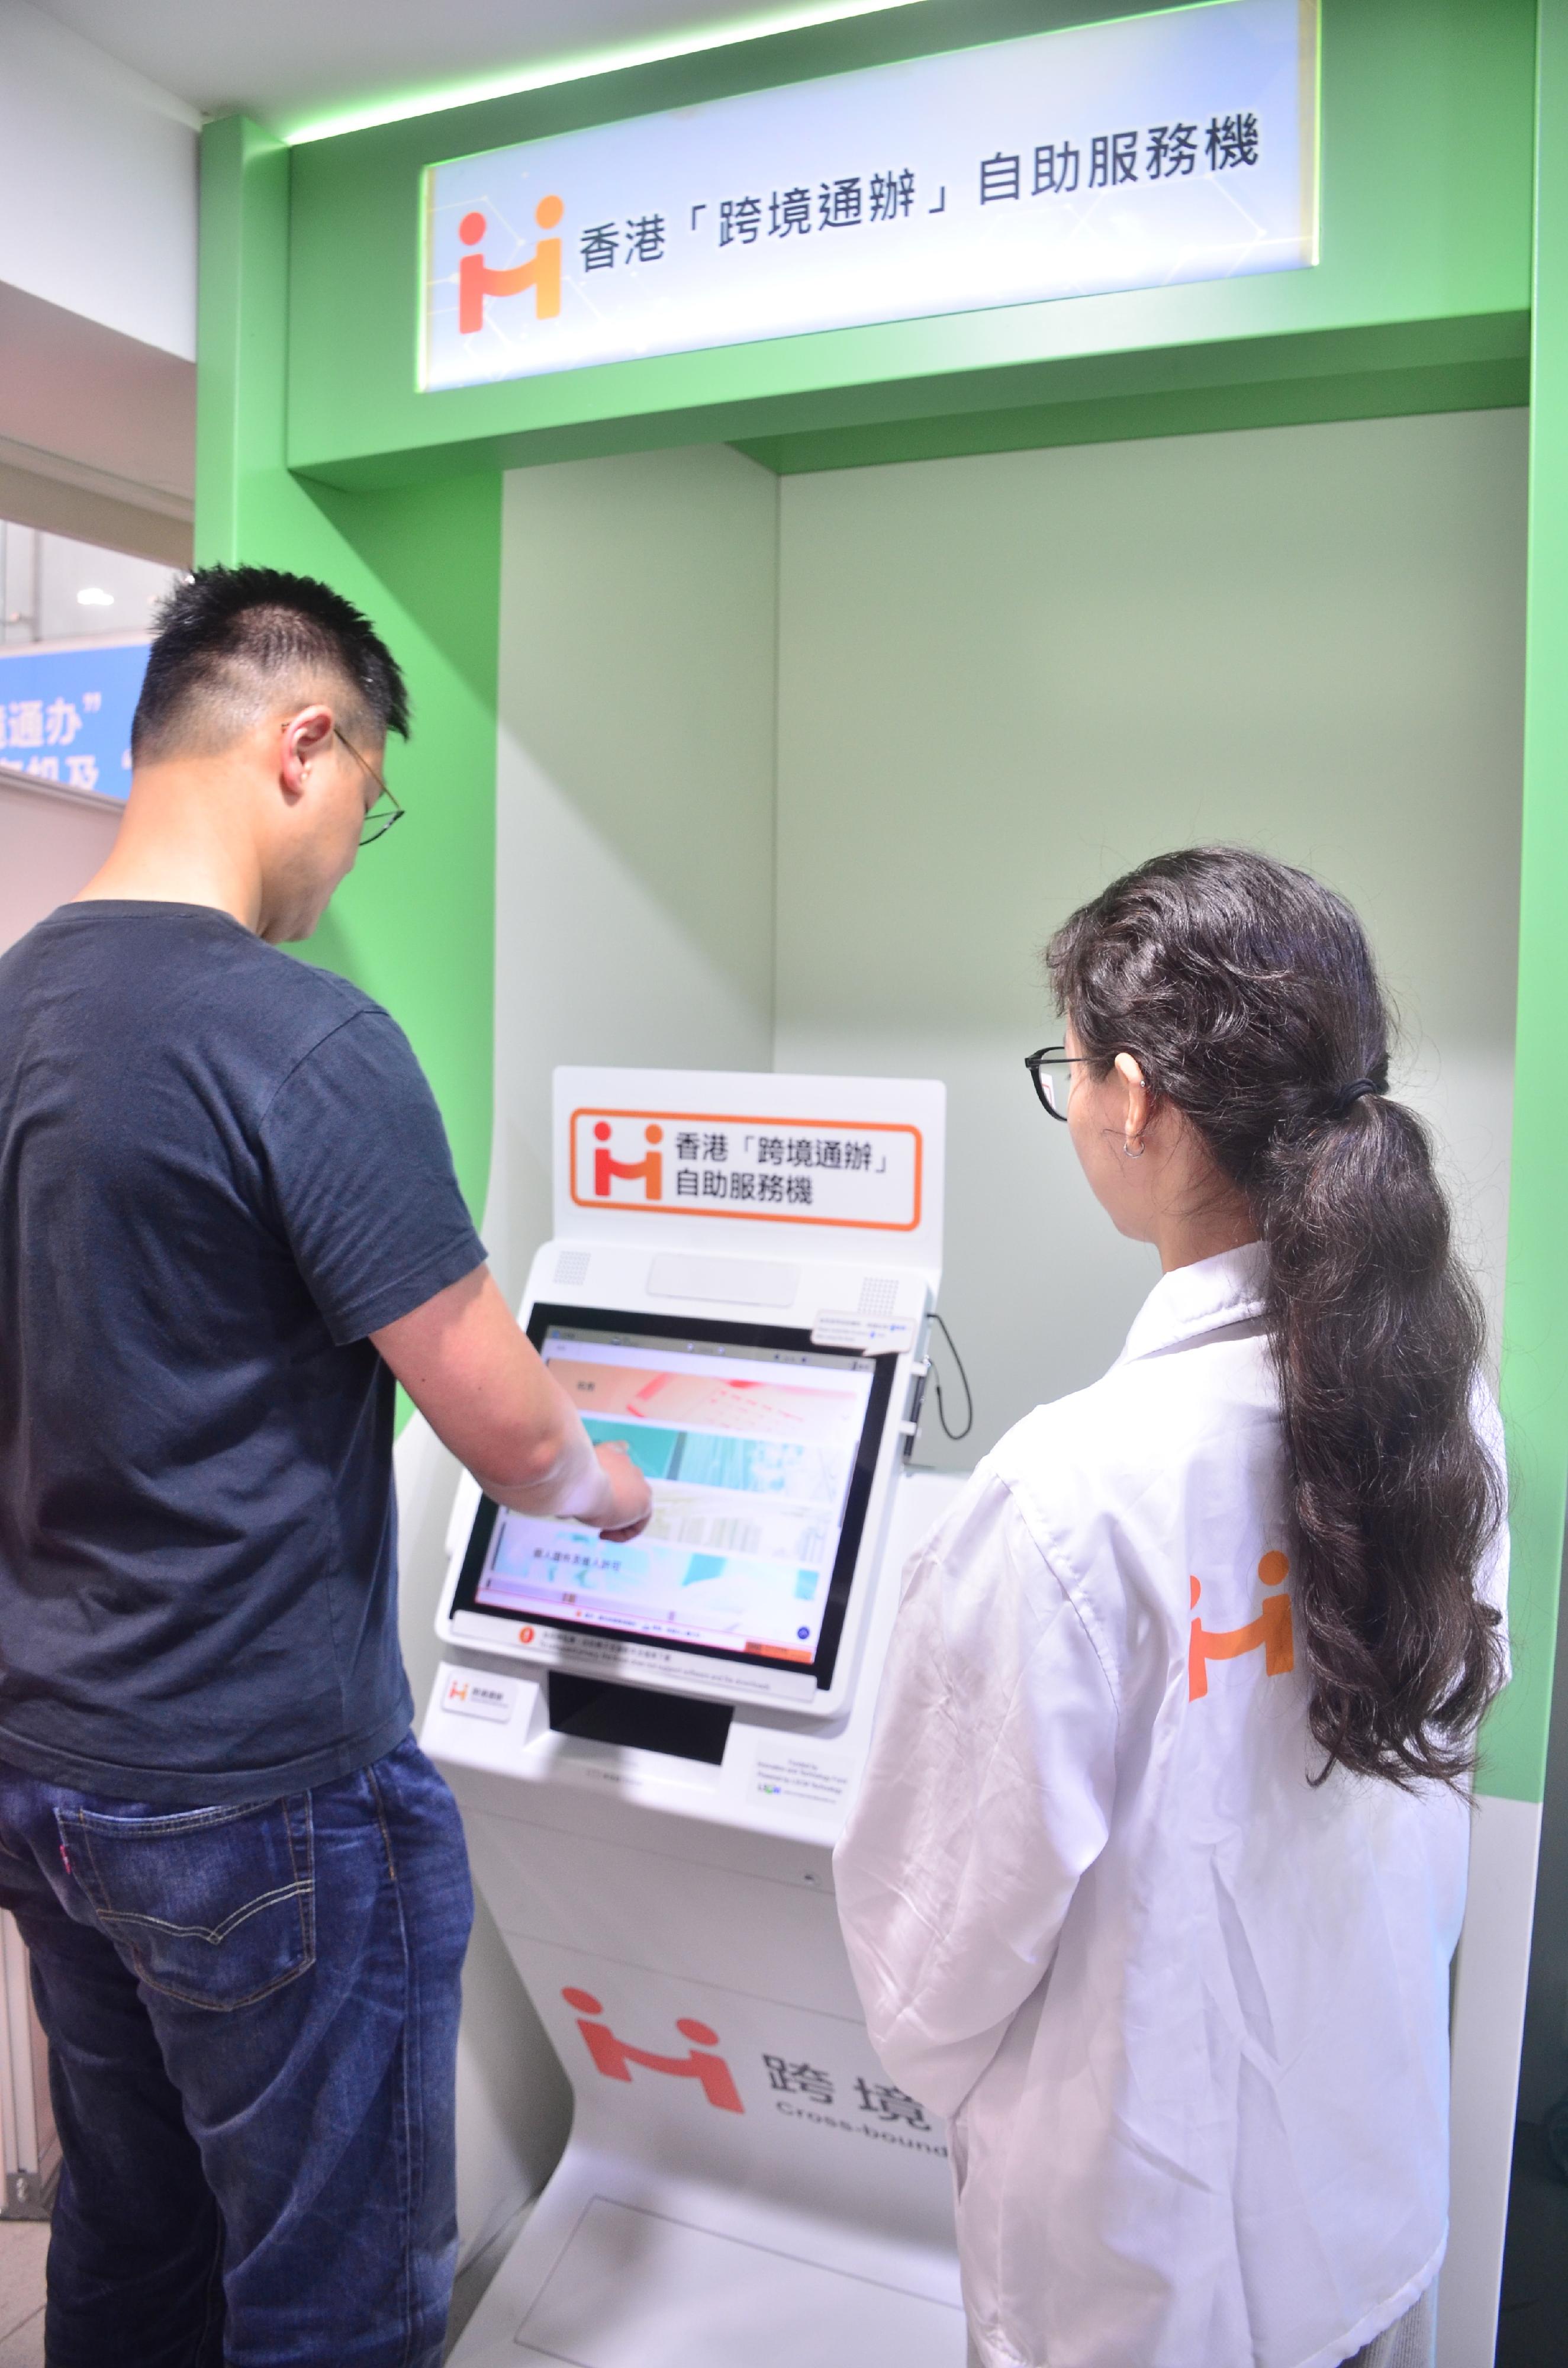 特区政府于深圳市前海e站通政务服务中心，设置香港「跨境通办」自助服务机。市民同时可使用设于同一地点的「智方便」自助登记站，办理「智方便+」的登记或升级手续。